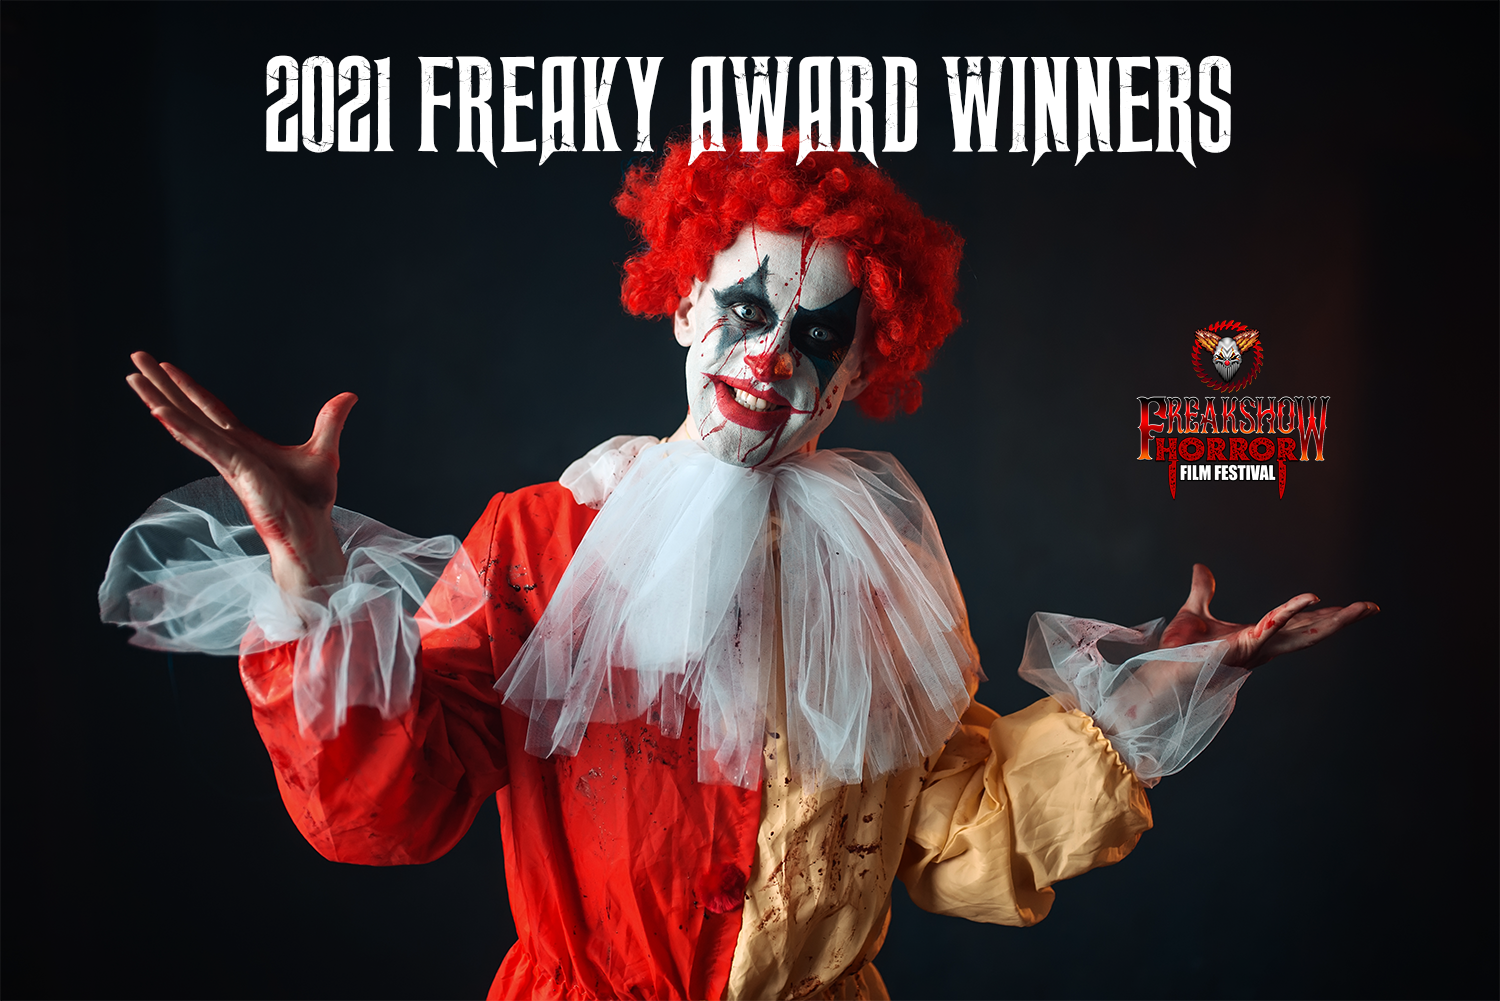 FREAK SHOW Horror Film Festival announces 2021 FREAKY AWARD Winners